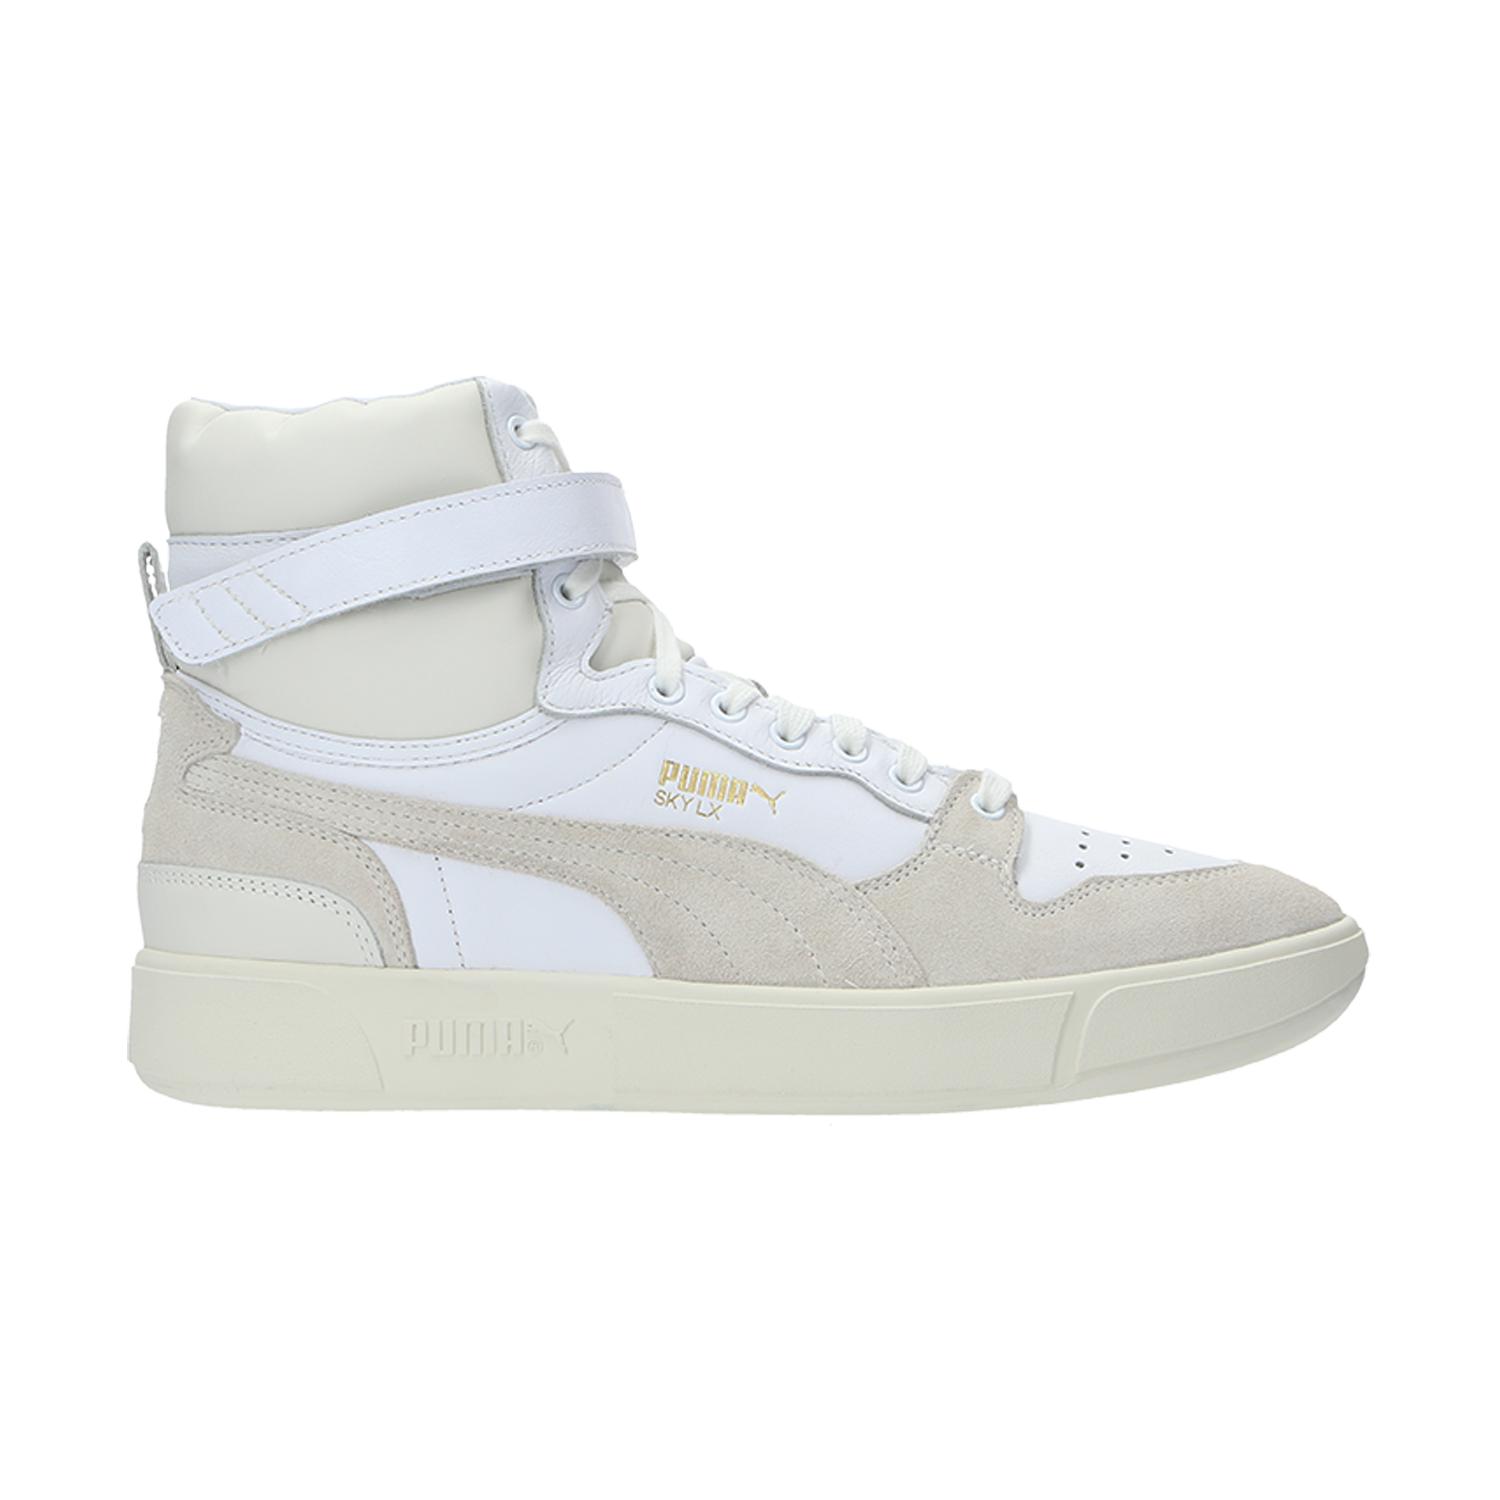 PUMA Rubber Sky Dreamer Basketball Shoes in White/White (White) for Men -  Lyst